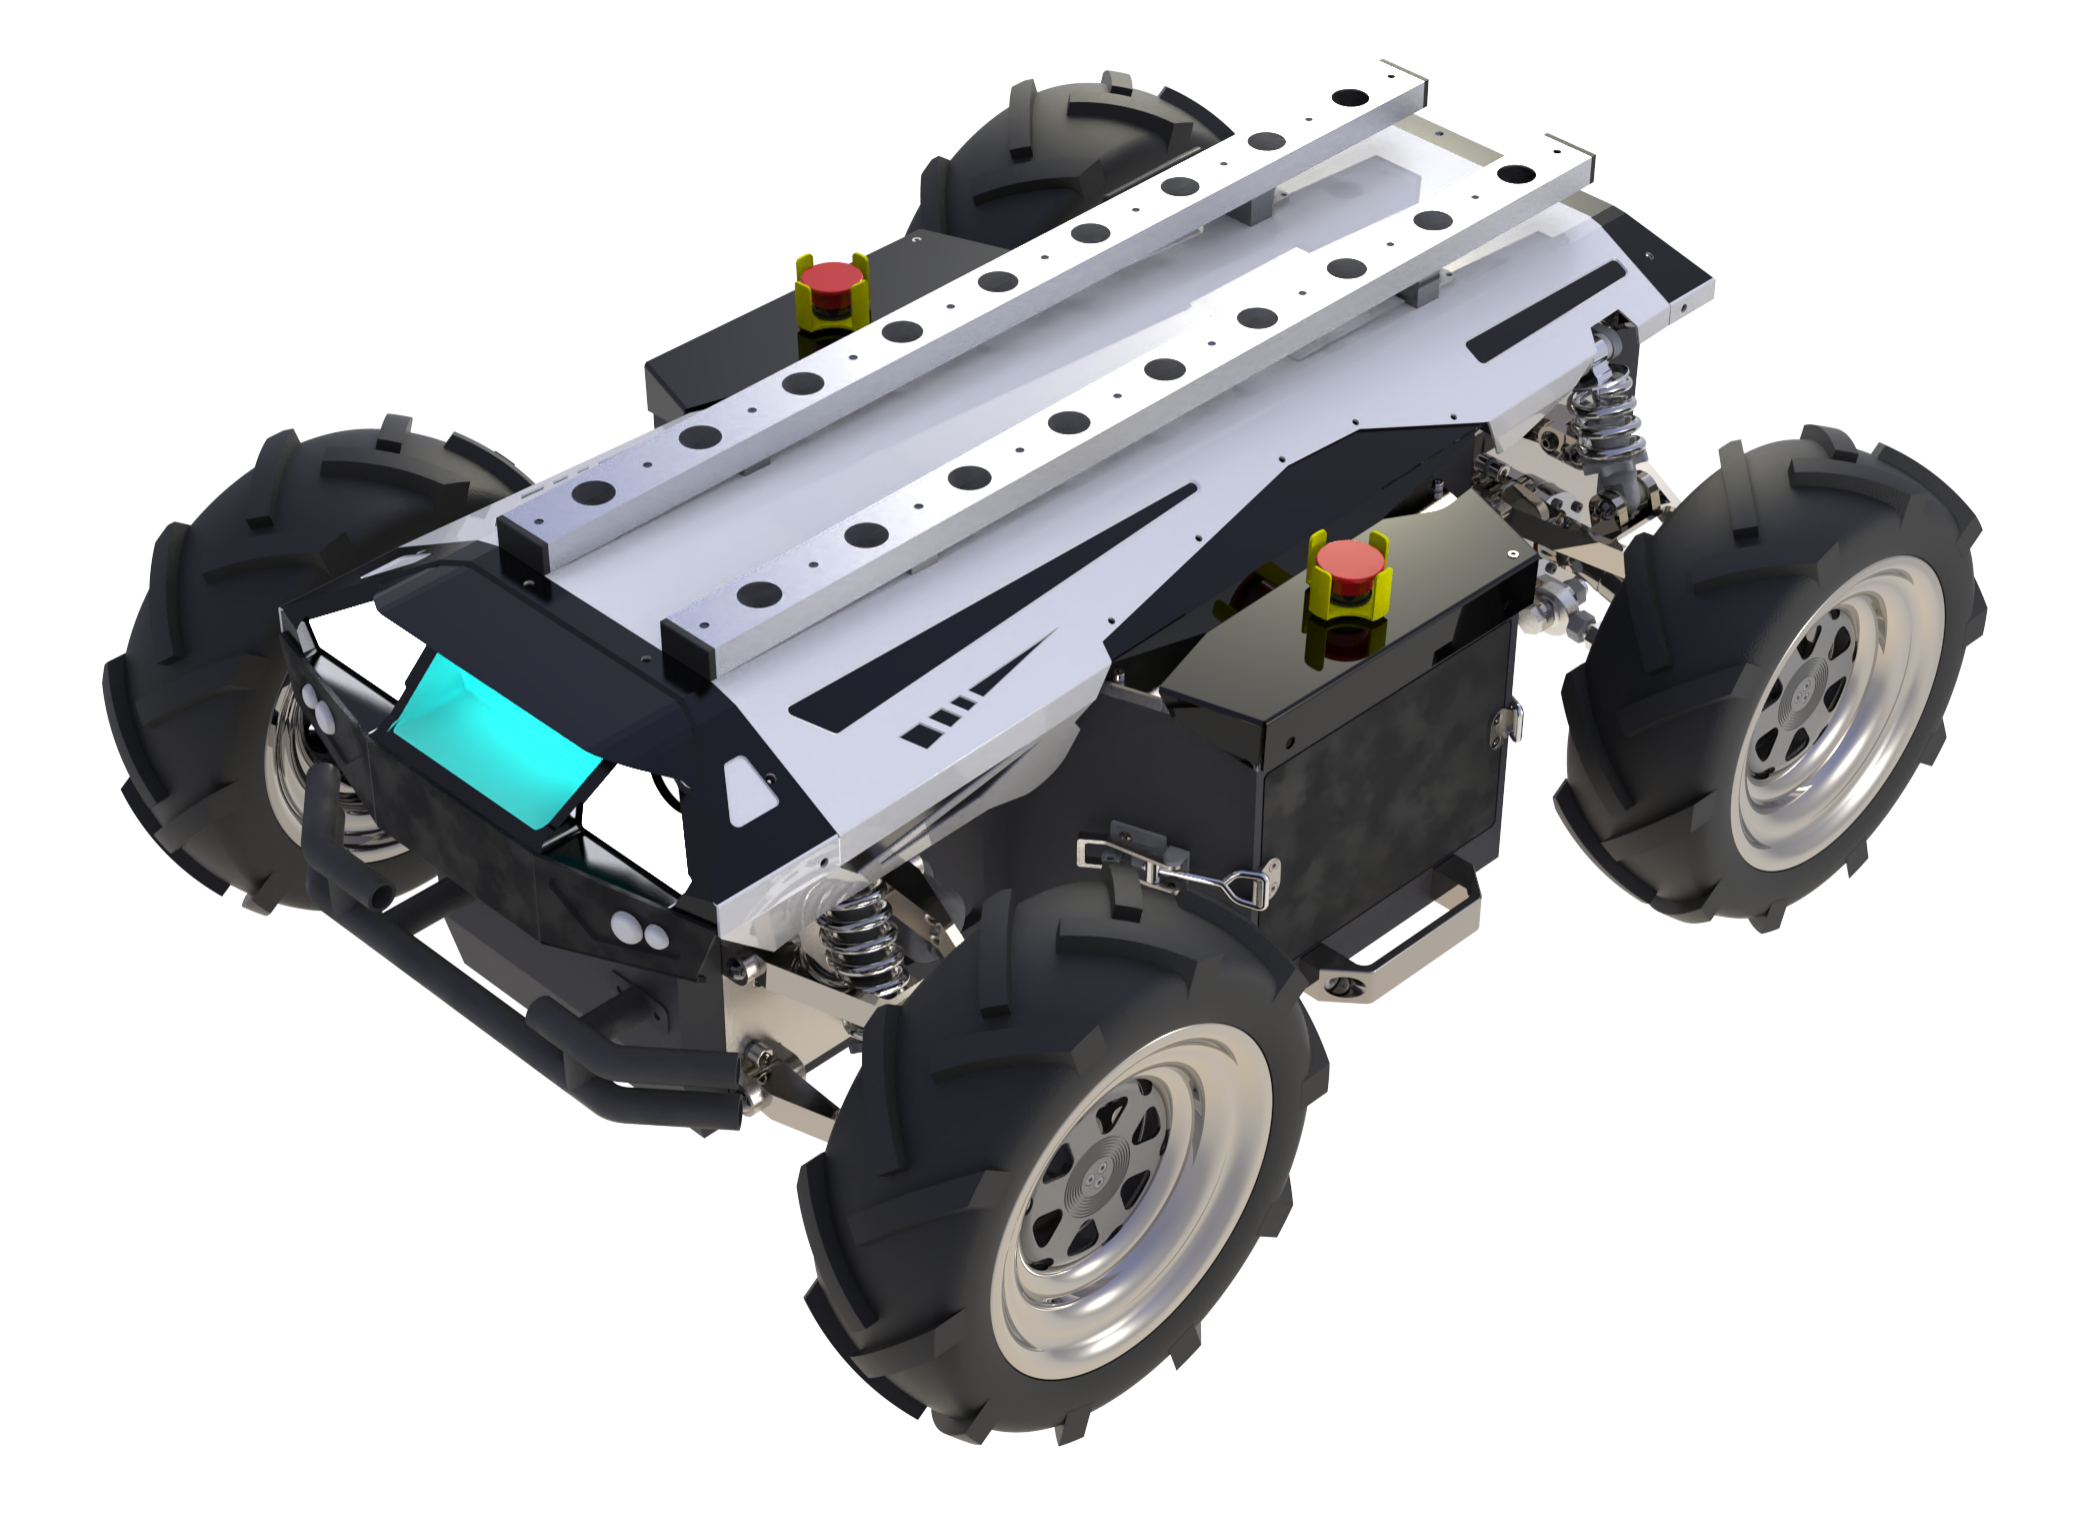 RLSDP 2.0 Radroboter-Chassis. Ausgewähltes Bild